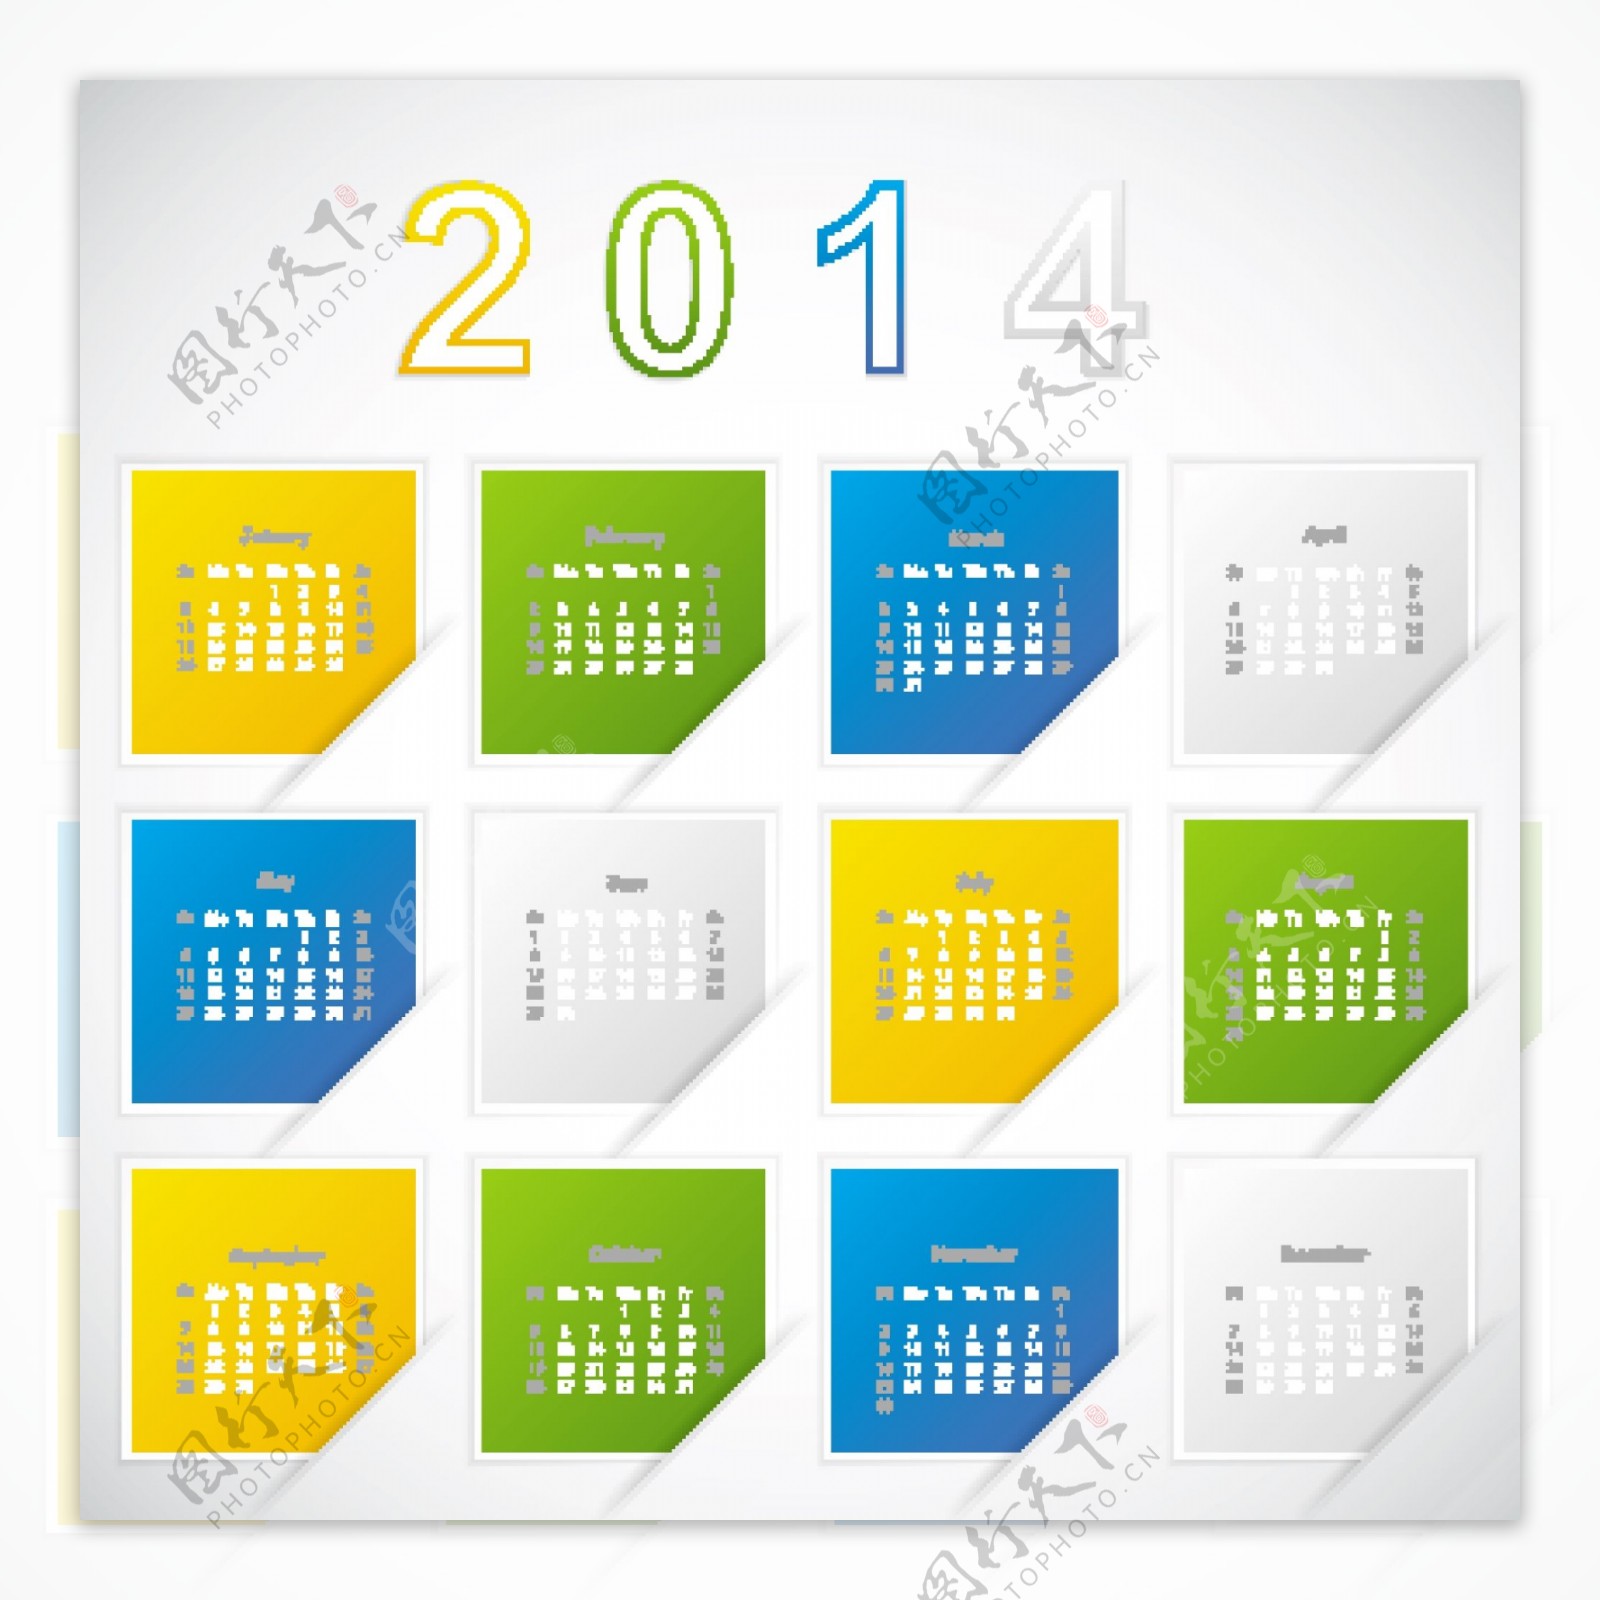 2014创意日历模板矢量素材AIEPS